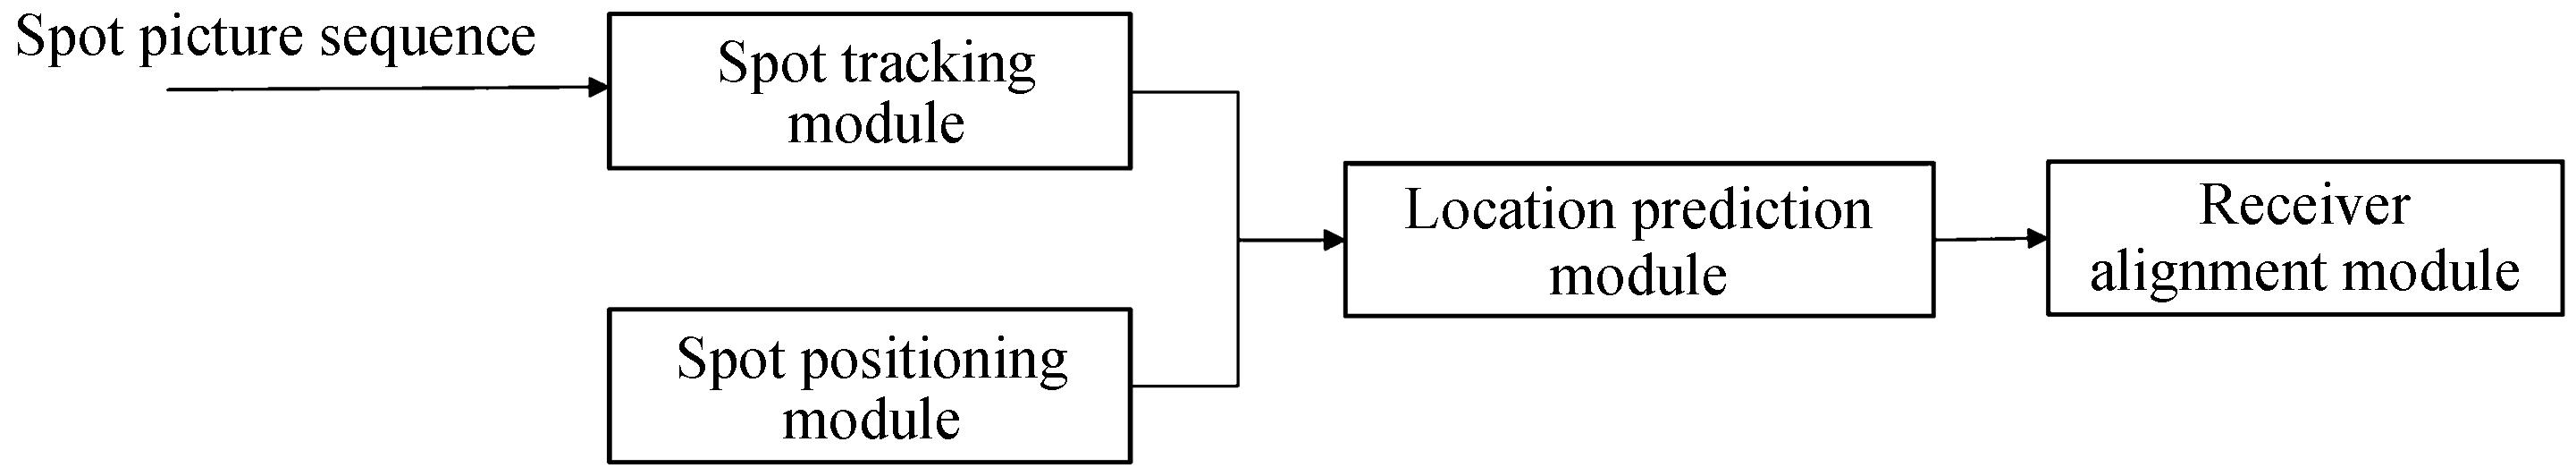 System module composition block diagram